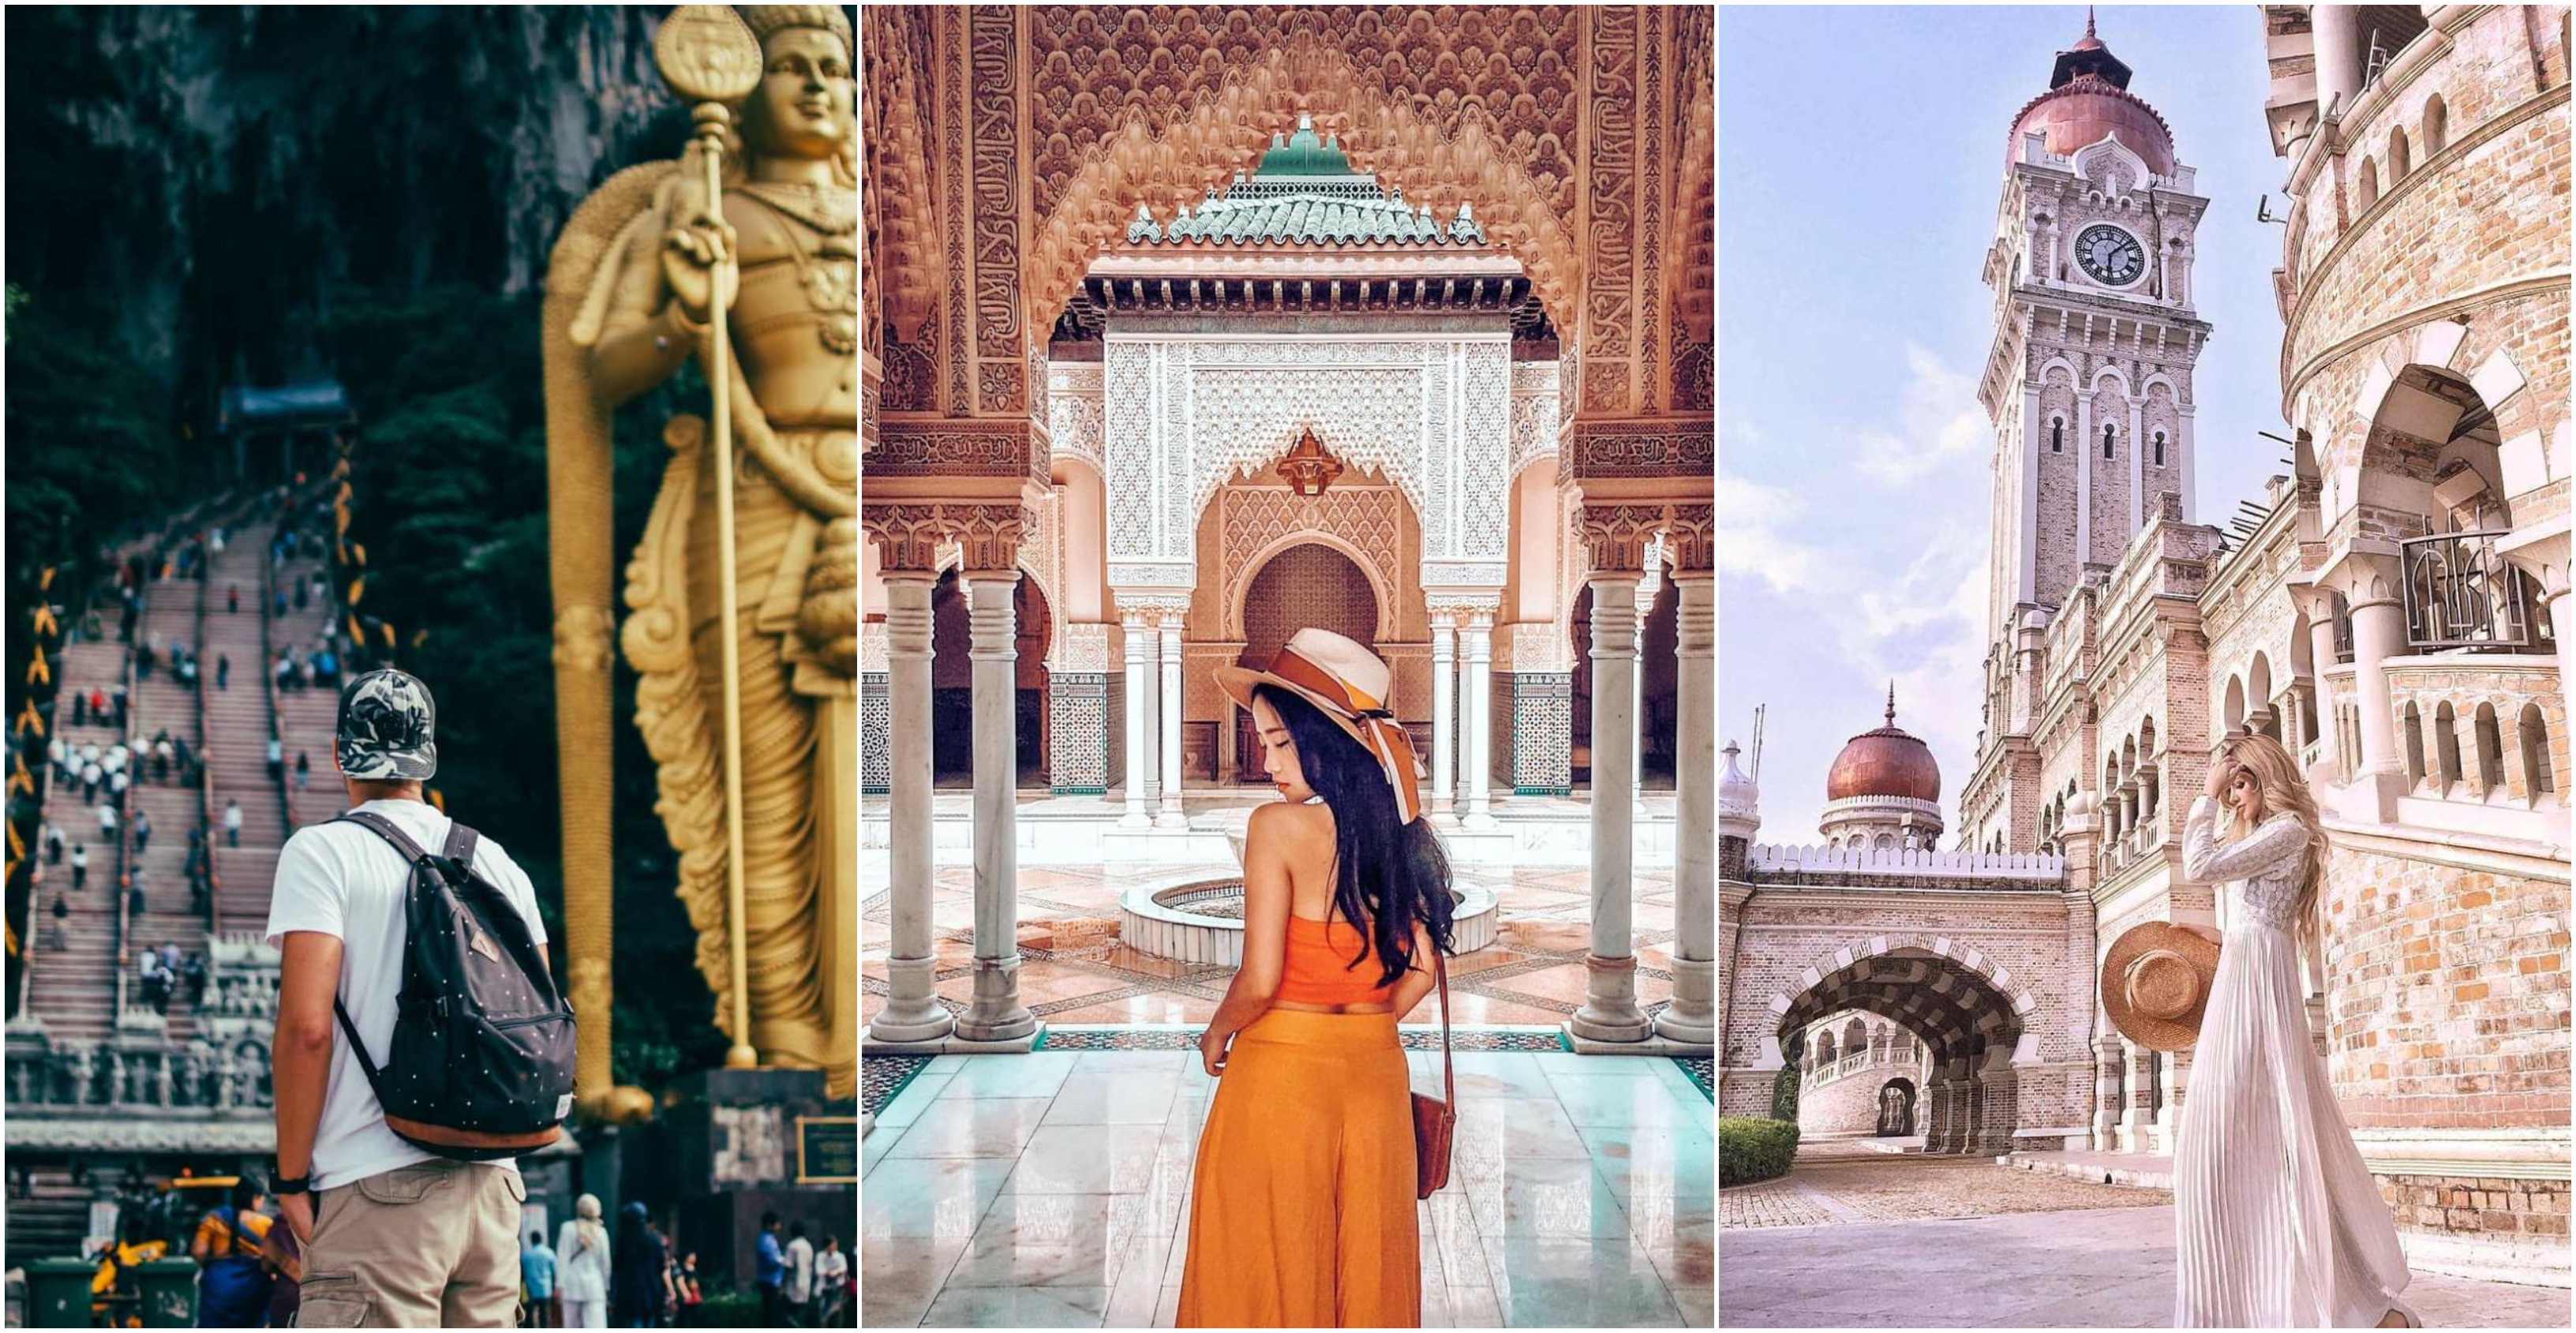 7 ‘Port’ Menarik & Lawa Di Sekitar Lembah Klang Yang Kaki Instagram Wajib Pergi!